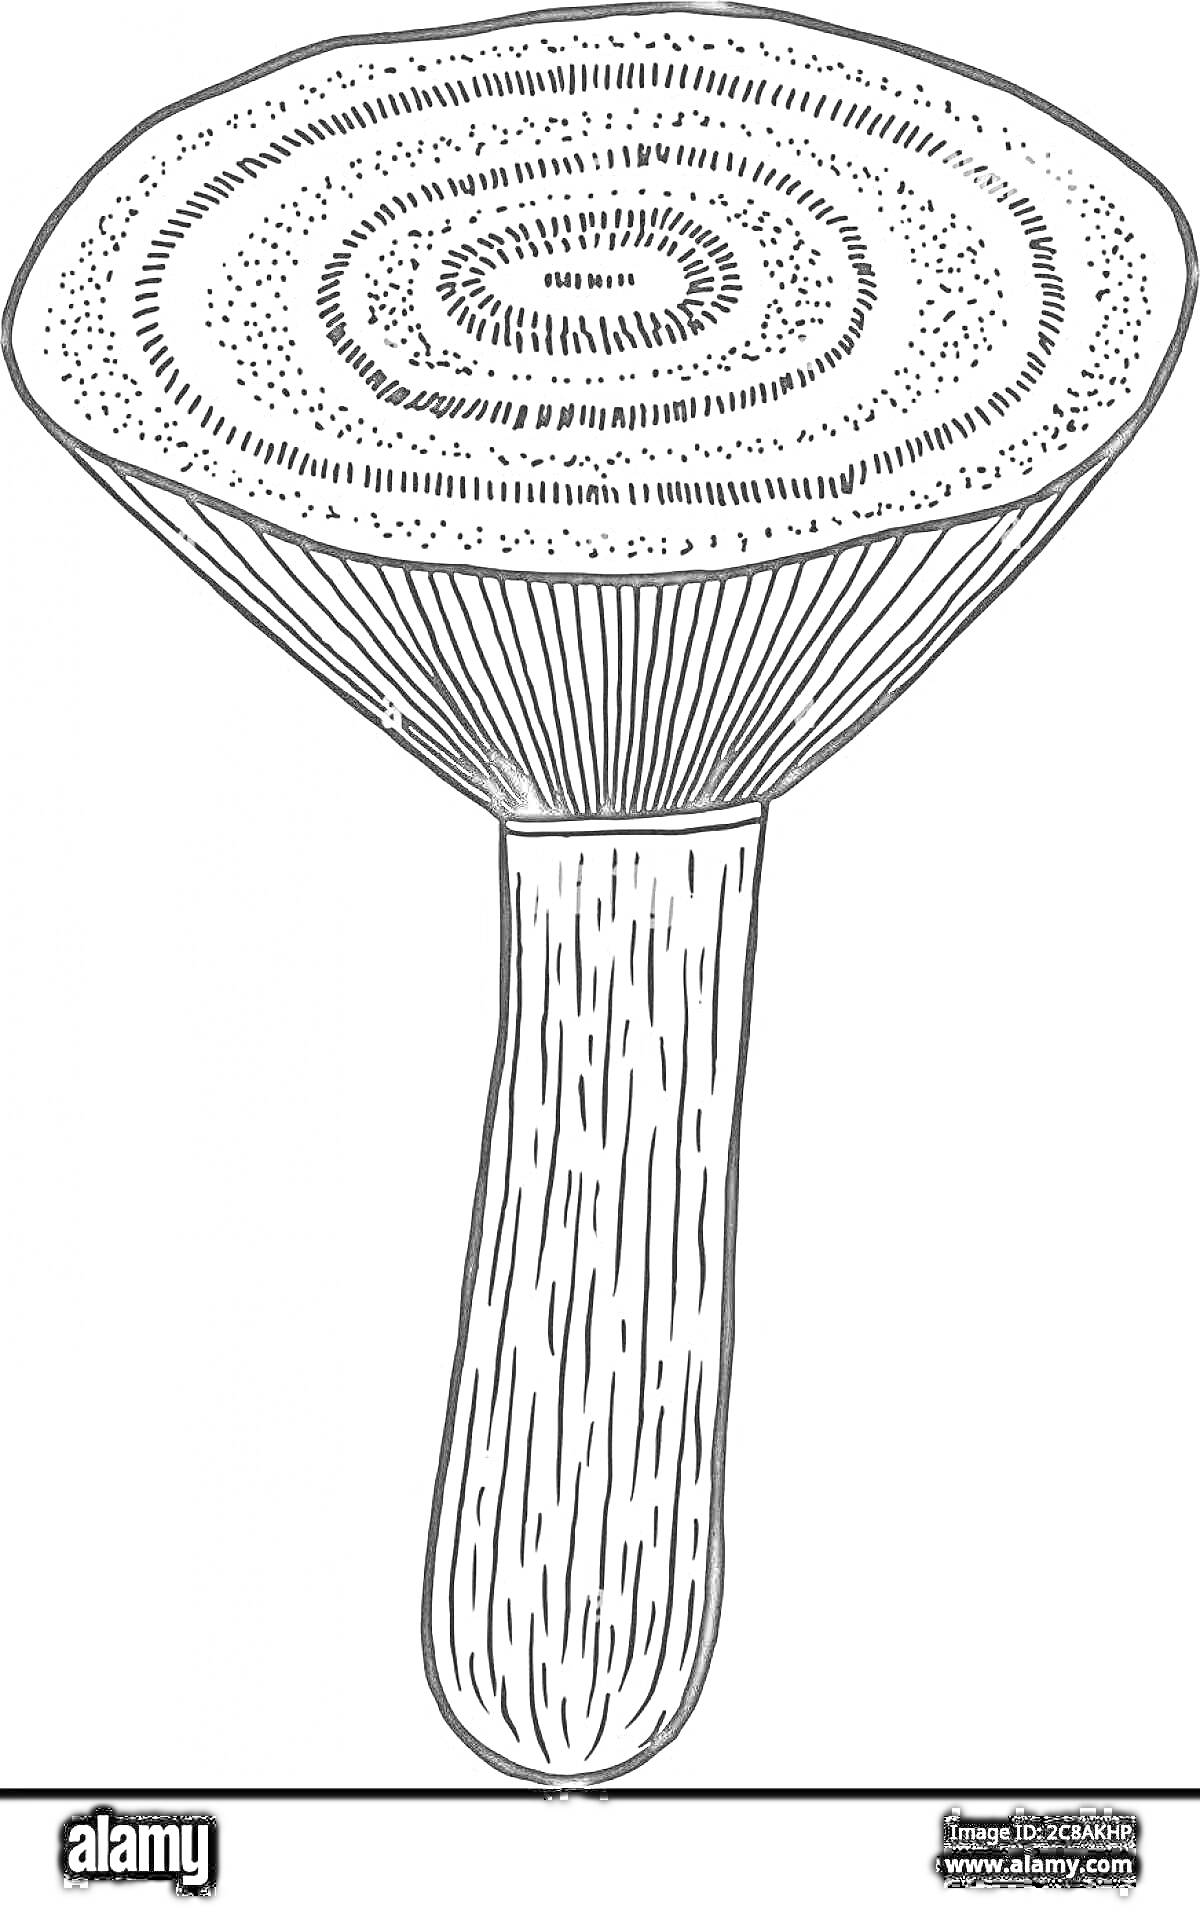 Раскраска Раскраска с изображением гриба груздя